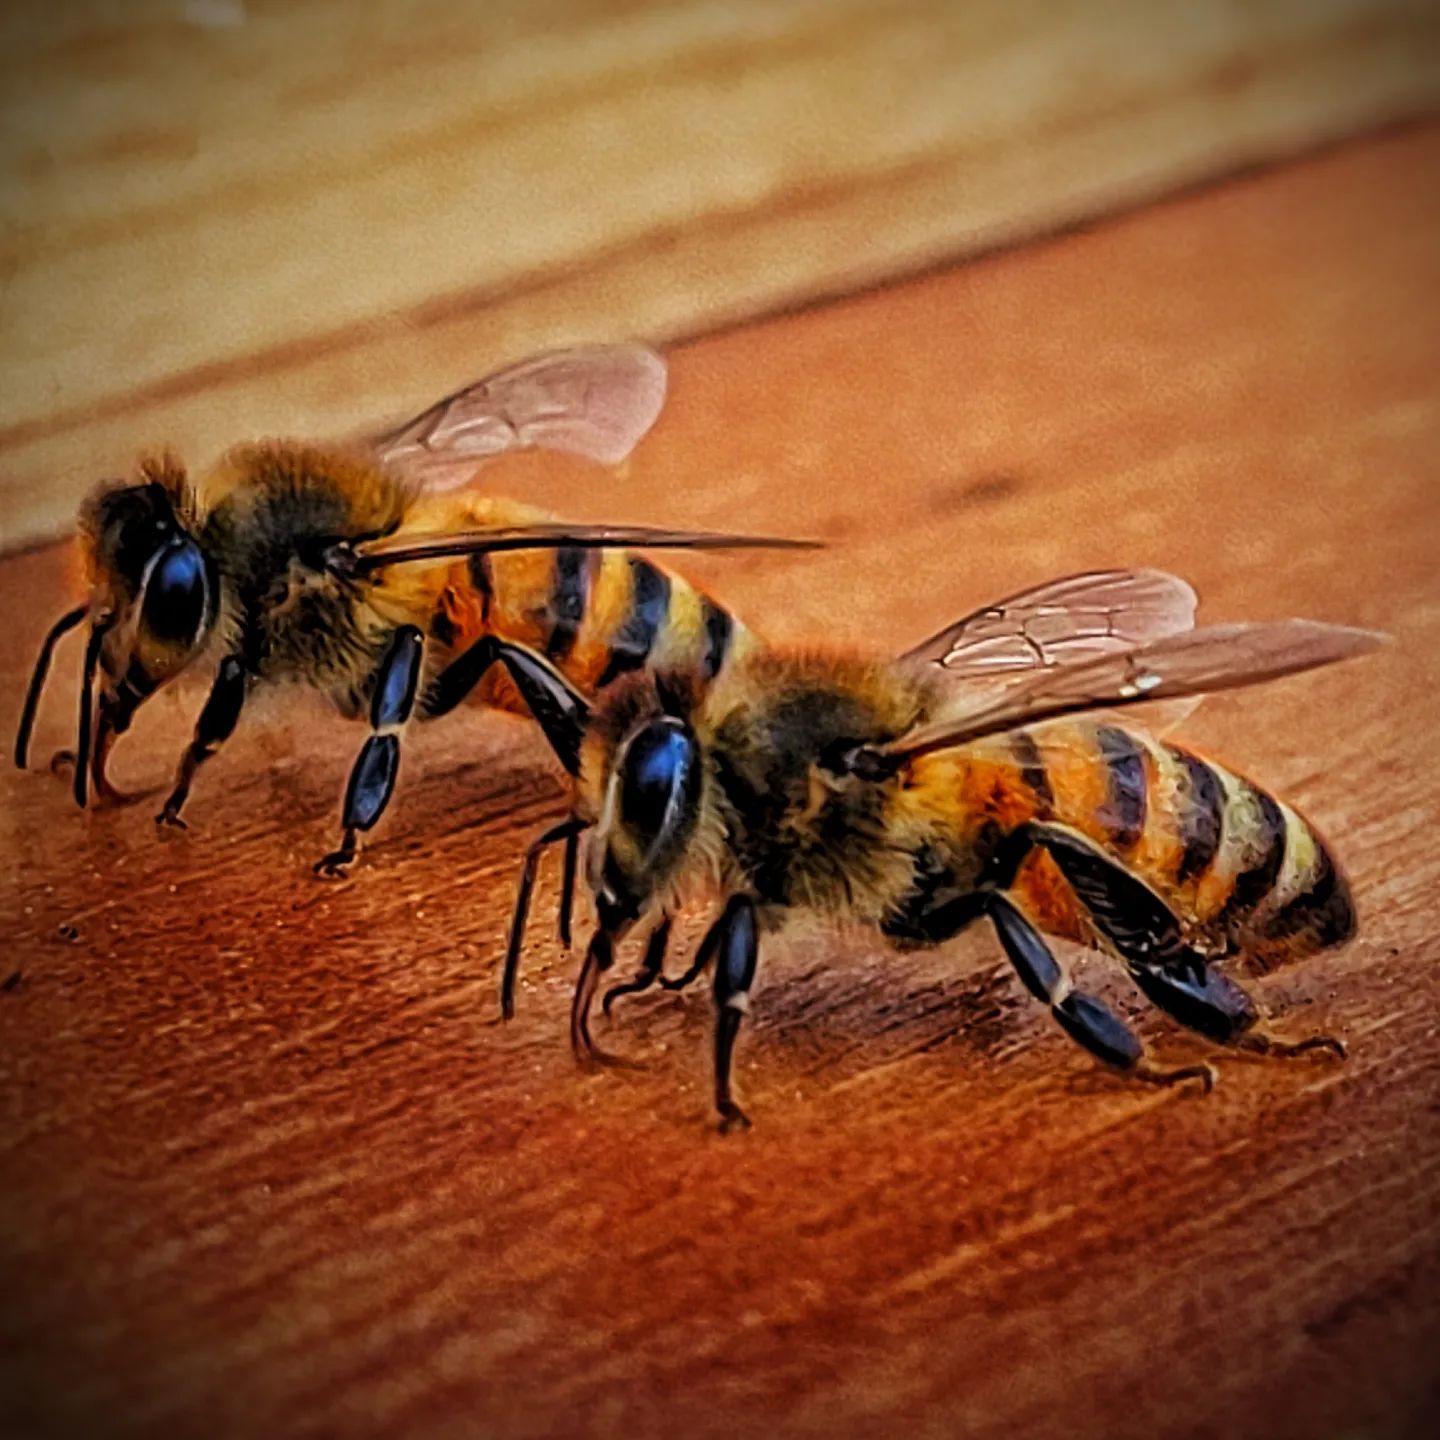 Watching them work is mesmerizing.

#lazylabacres #honeybees #homestead #countryliving #beehive #beeyard #apiary #ourbees #beekeeping